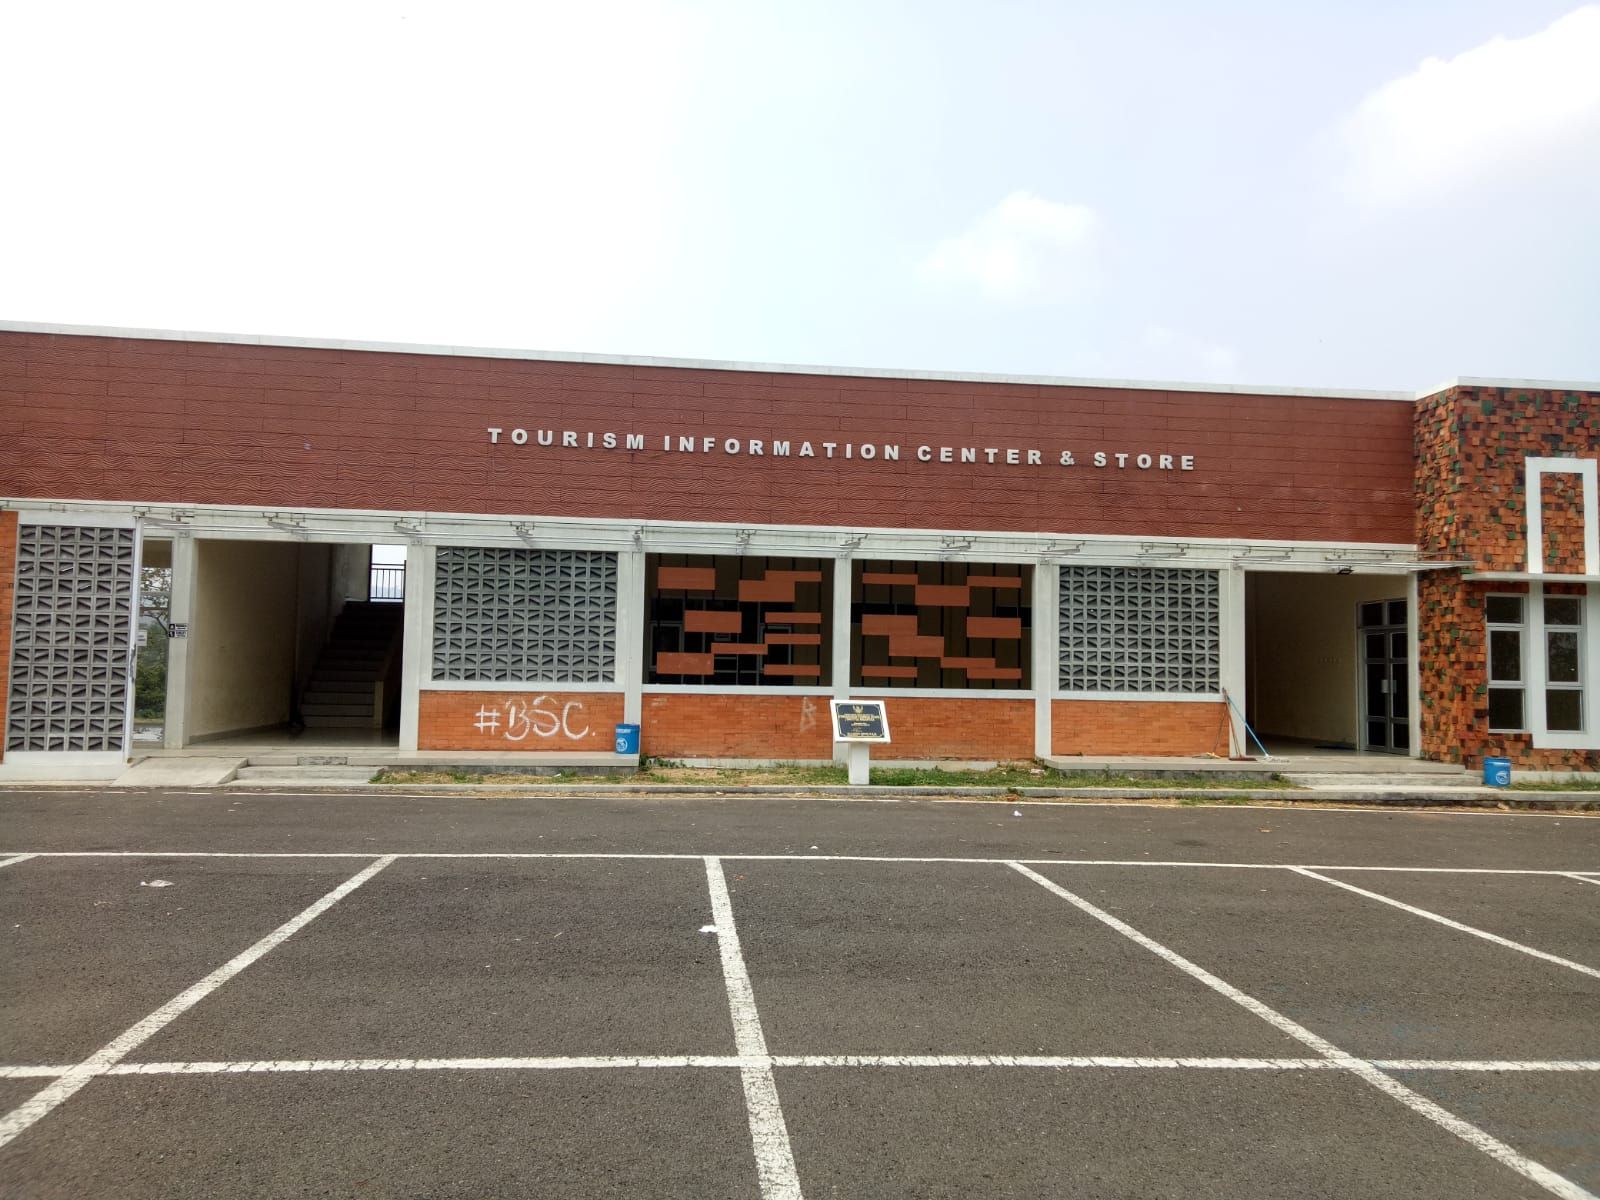  Gedung Tourism Information Center & Store di Desa Sukasari Kaler, Kecamatan Argapura, Kabupaten Majalengka yang diresmikan Bupati Majalengka pada Januari Tahun 2022 lalu belum berfungsi, kini kondisinya nampak tidak terawat dan menjadi tempat aksi vandalisme.